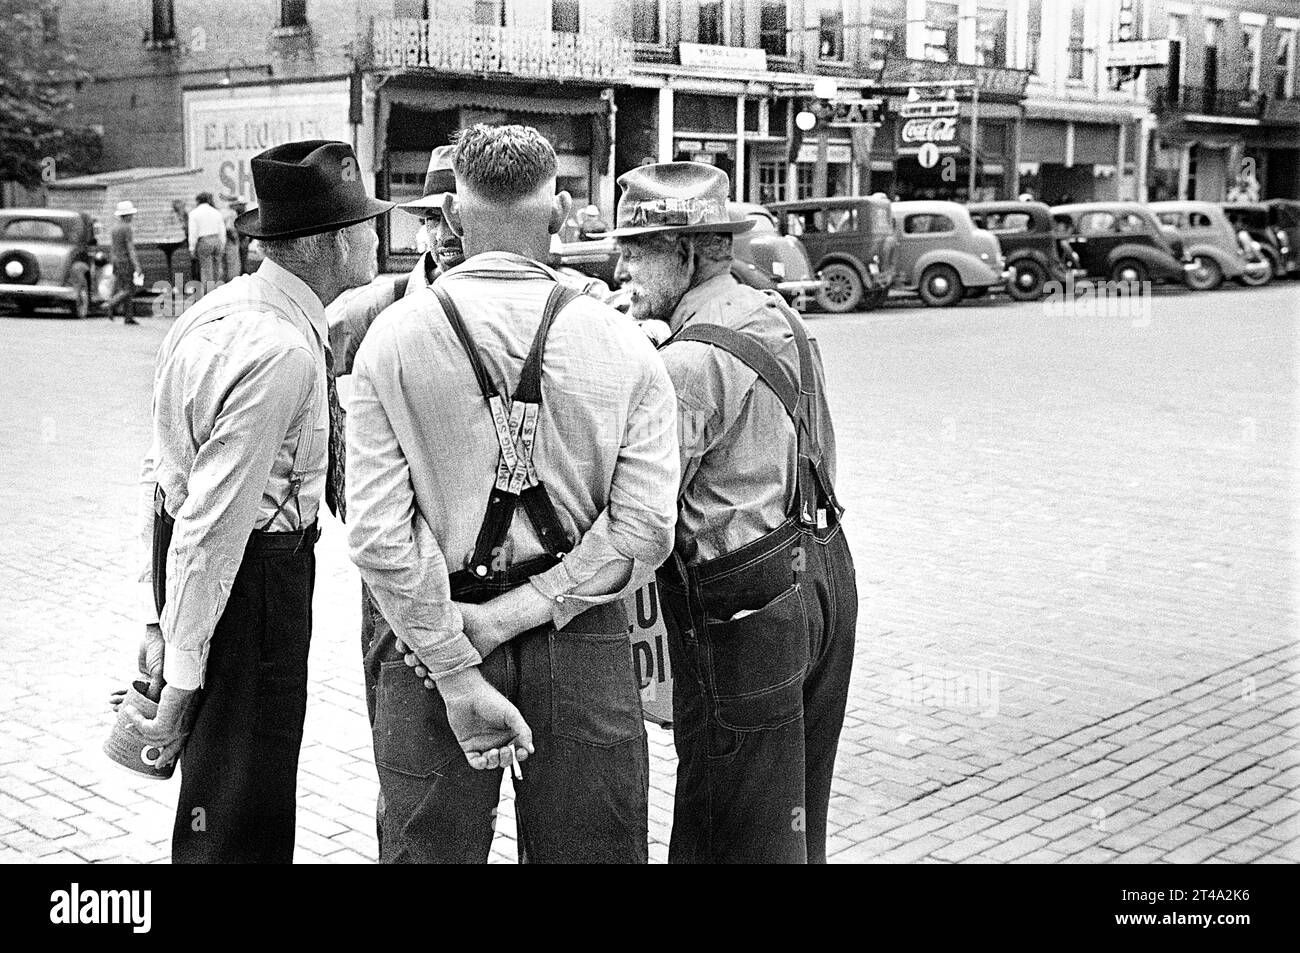 Straßenszene, vier Männer in Gesprächen, Washington Court House, Ohio, USA, Ben Shahn, U.S. Farm Security Administration, Juli 1938 Stockfoto